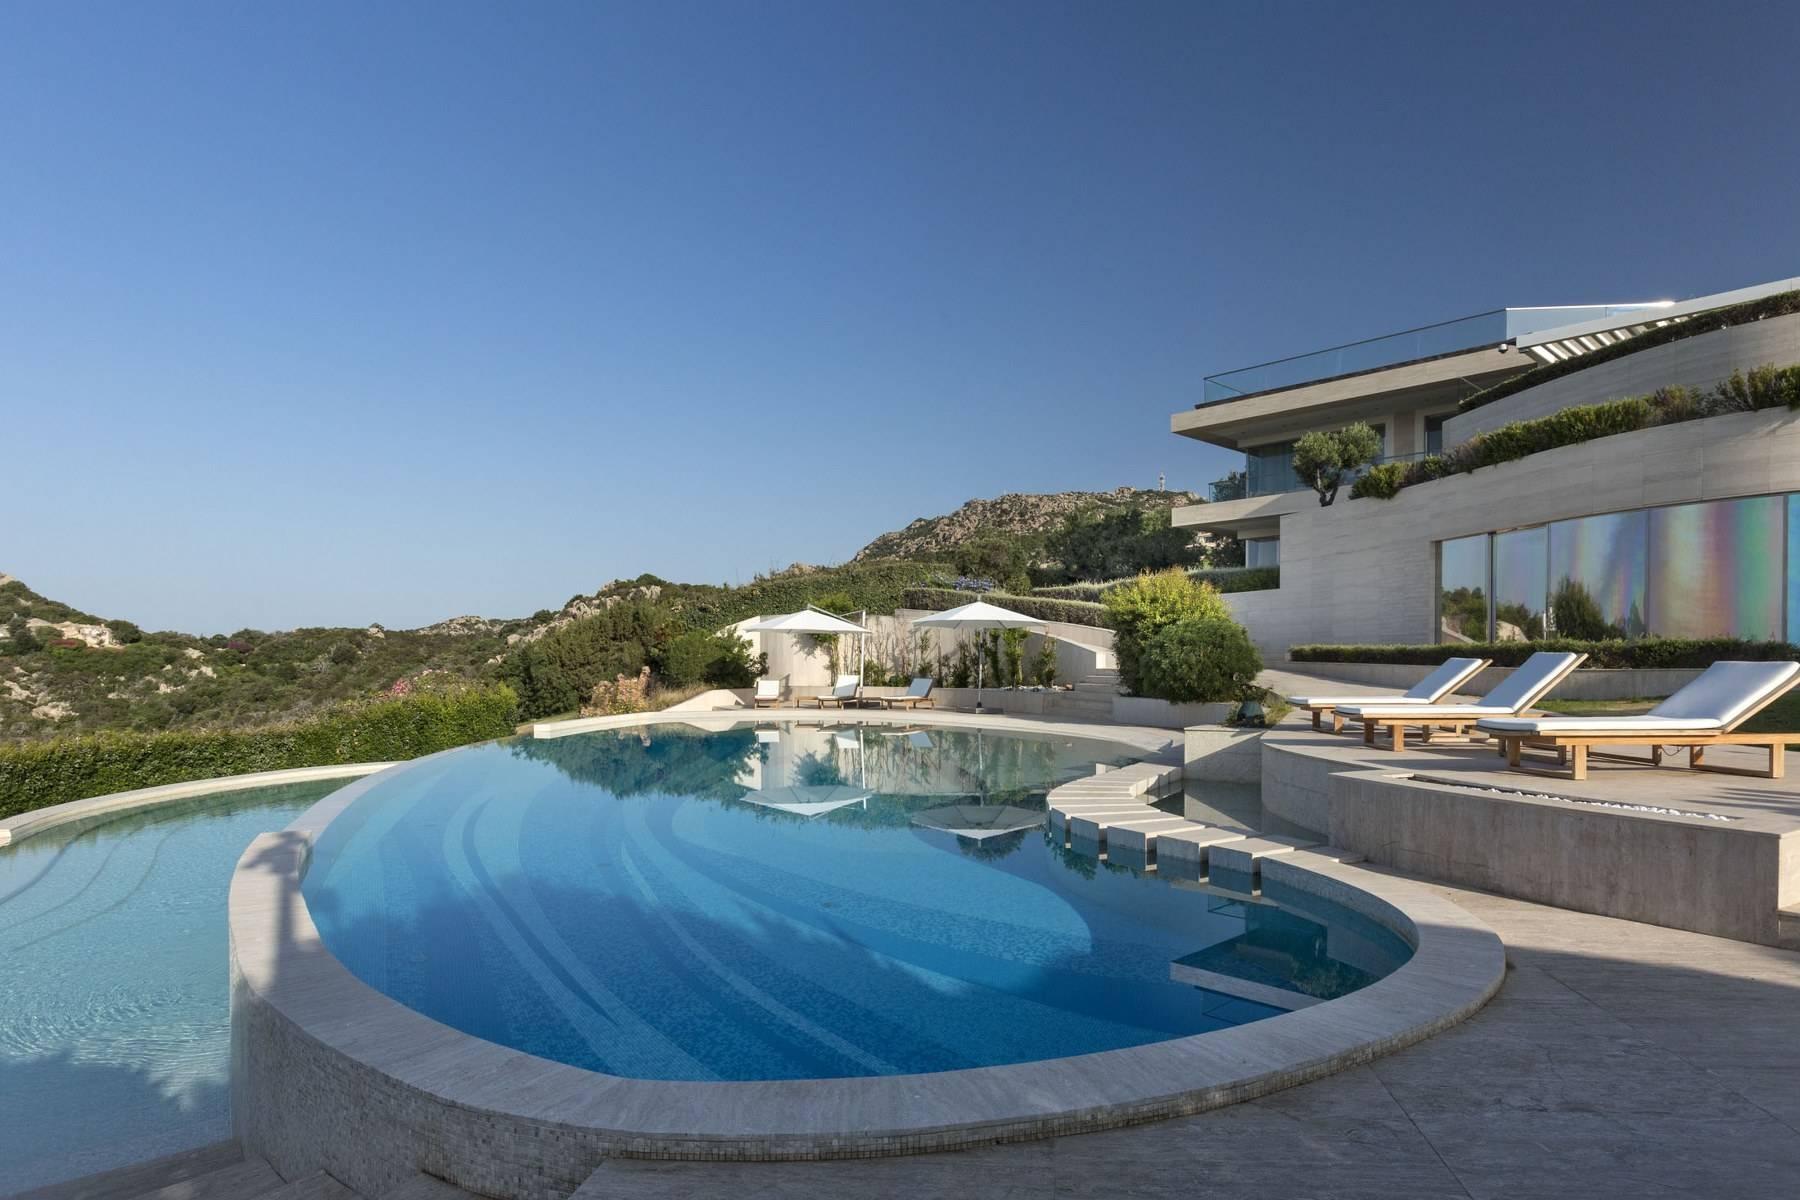 Prestigious and elegant villa located in the heart of the Costa Smeralda - 20